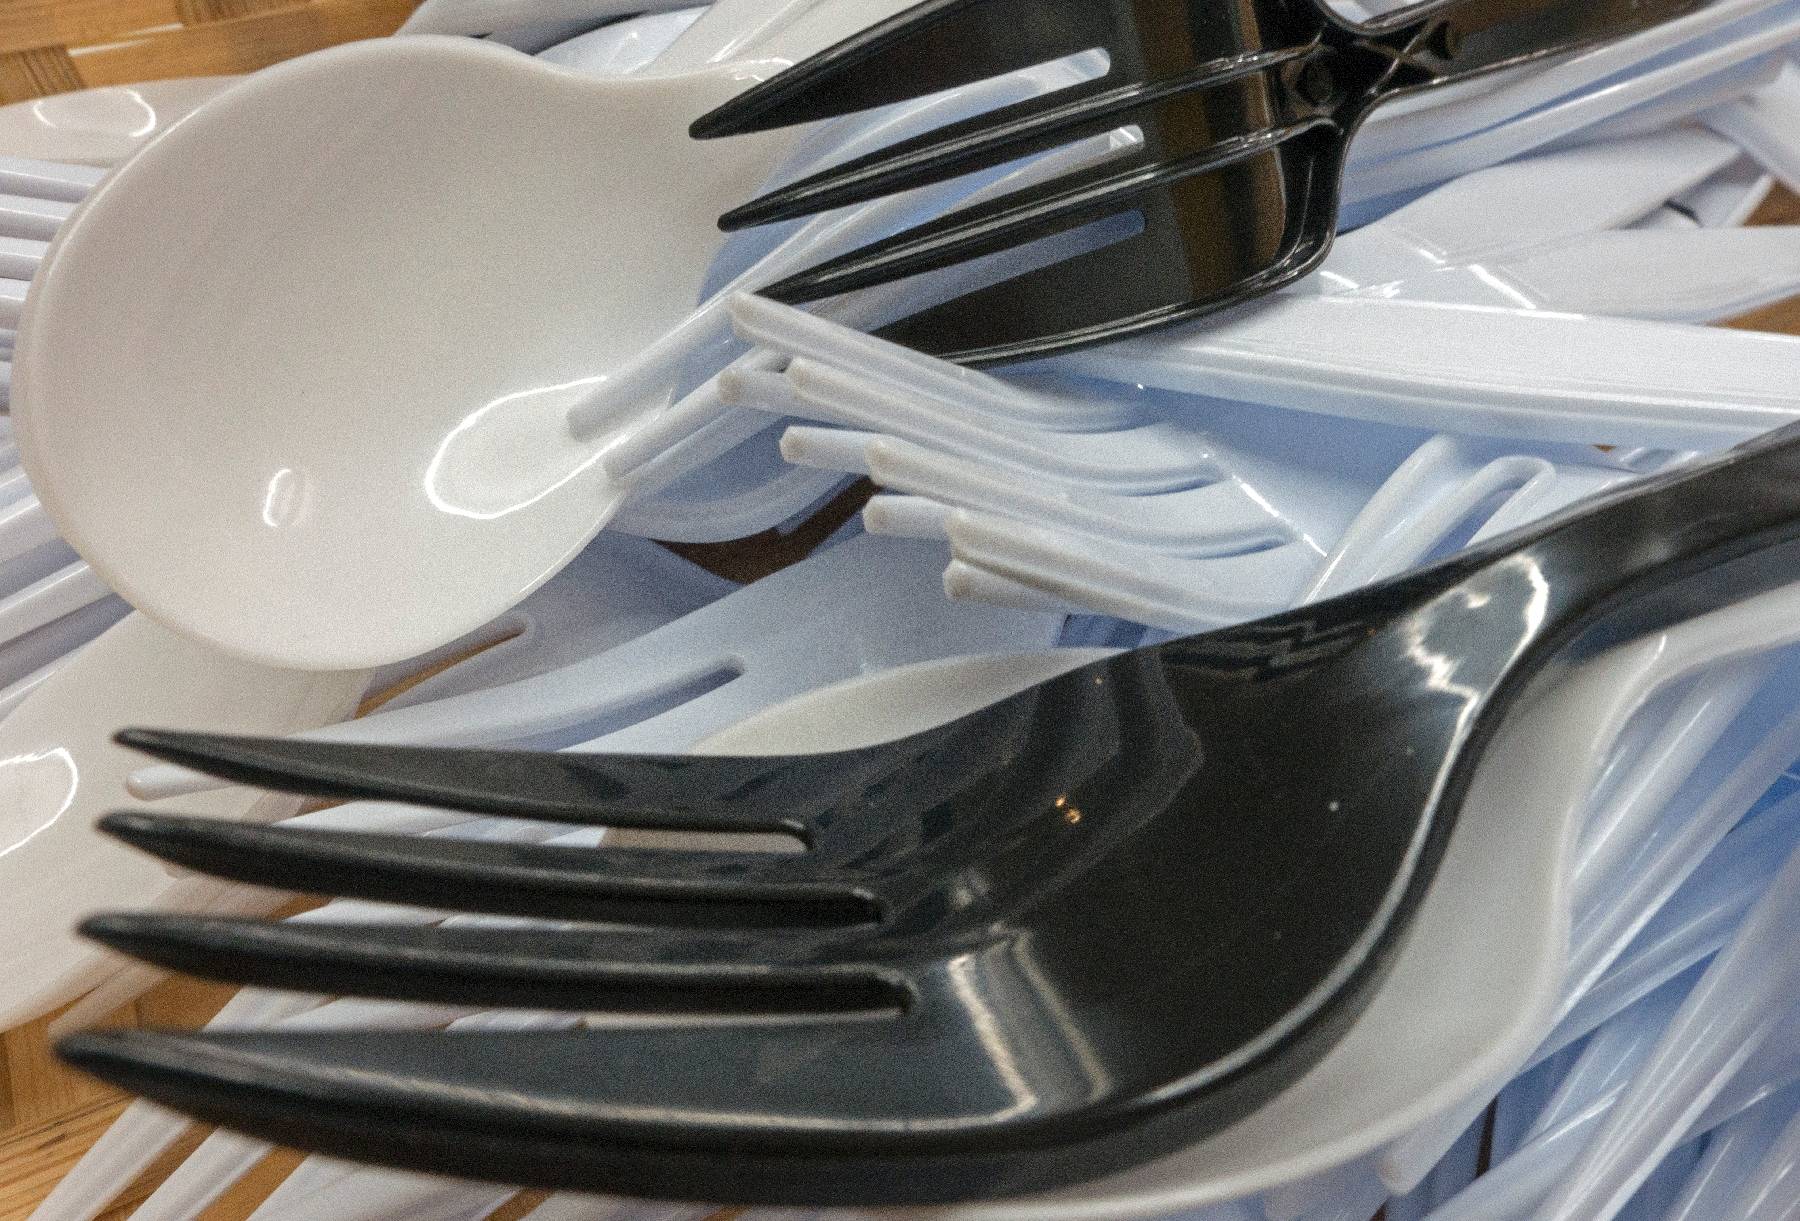 Vaisselle réutilisable: le gouvernement menace les mauvais élèves de la restauration rapide